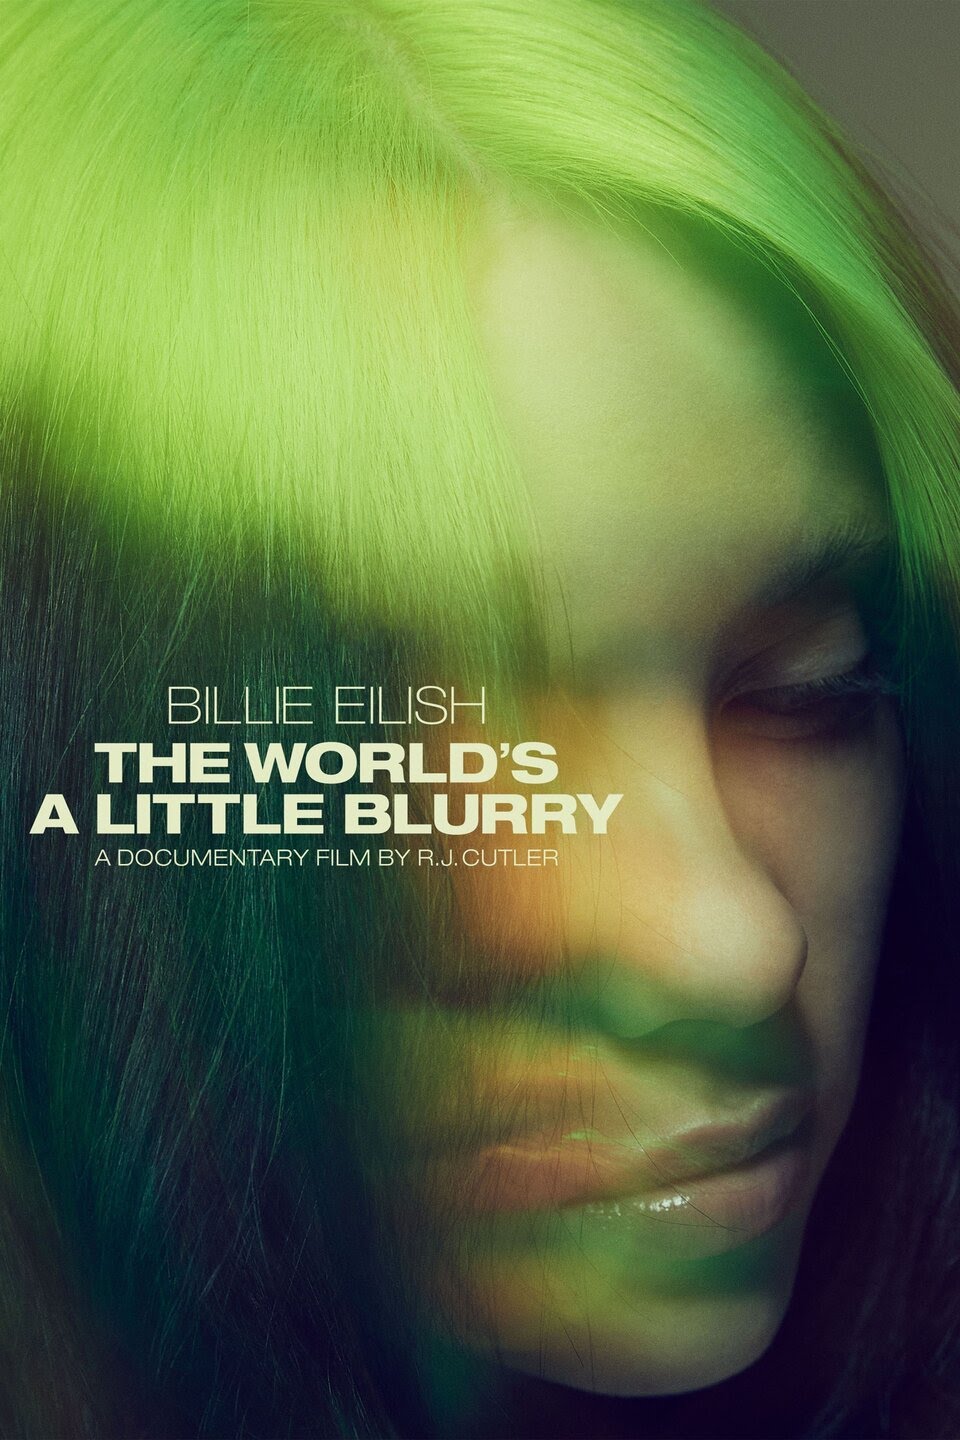 ดูหนังใหม่ Billie Eilish The World's a Little Blurry (2021)